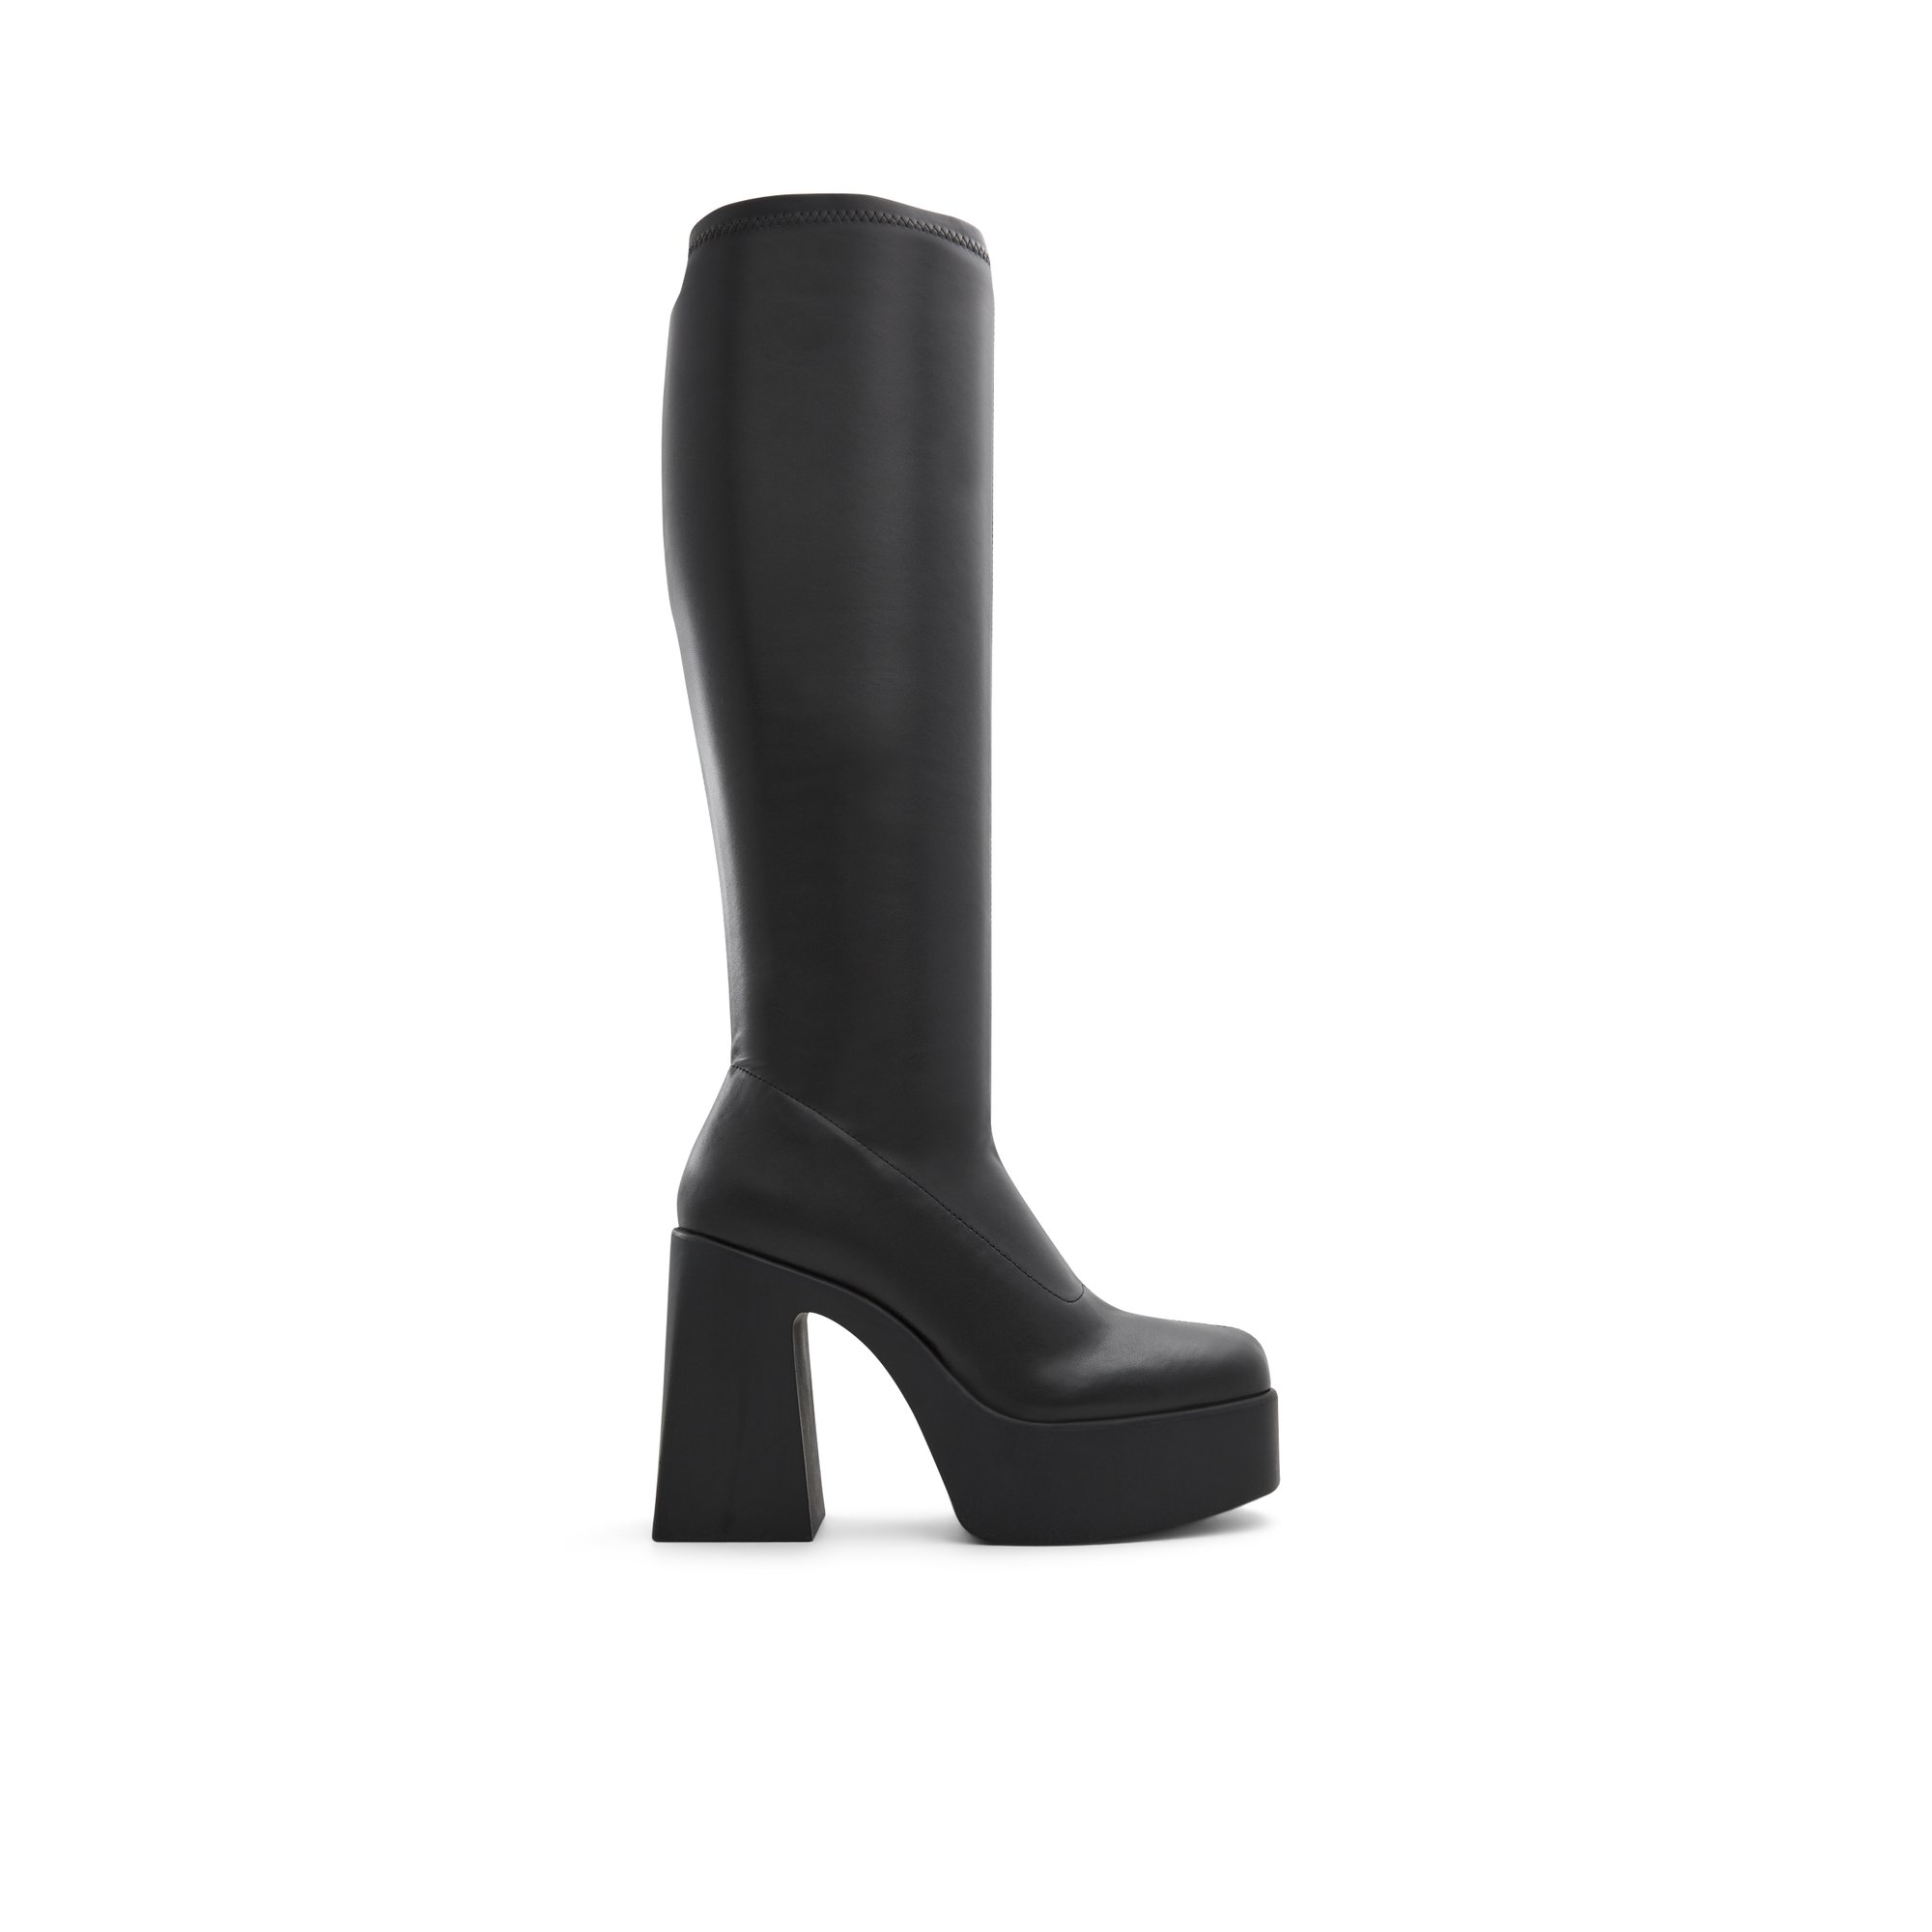 ALDO Moulin - Women's Dress Boot - Black